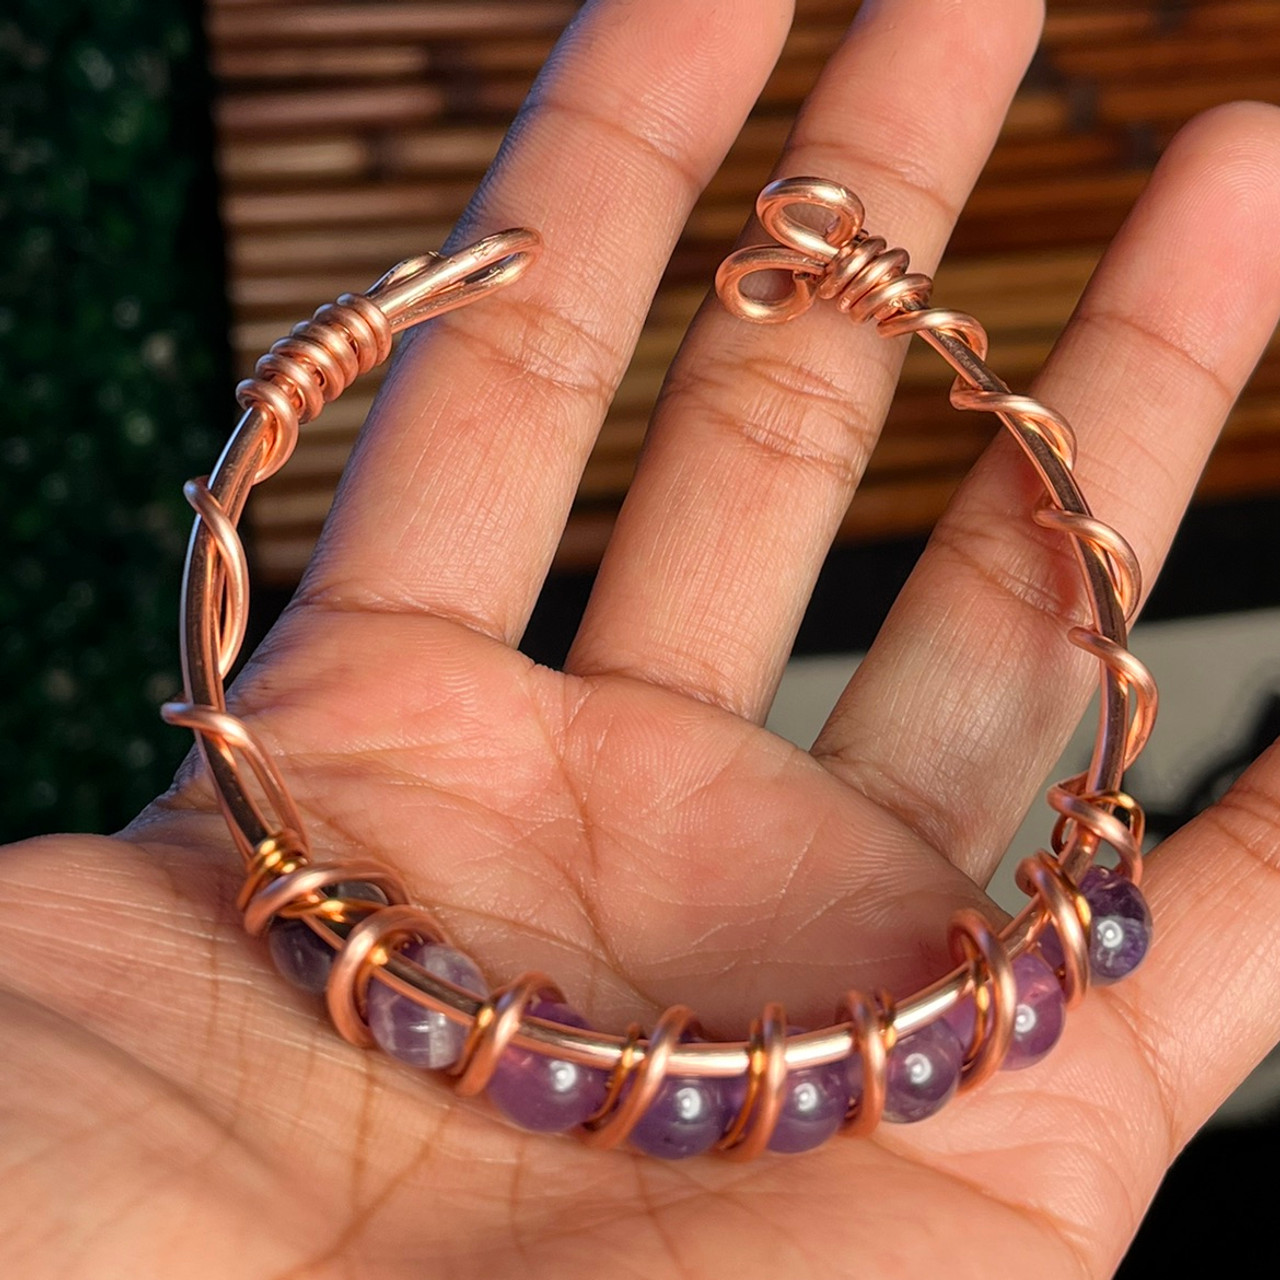 omkar Copper Bracelet Price in India - Buy omkar Copper Bracelet Online at  Best Prices in India | Flipkart.com